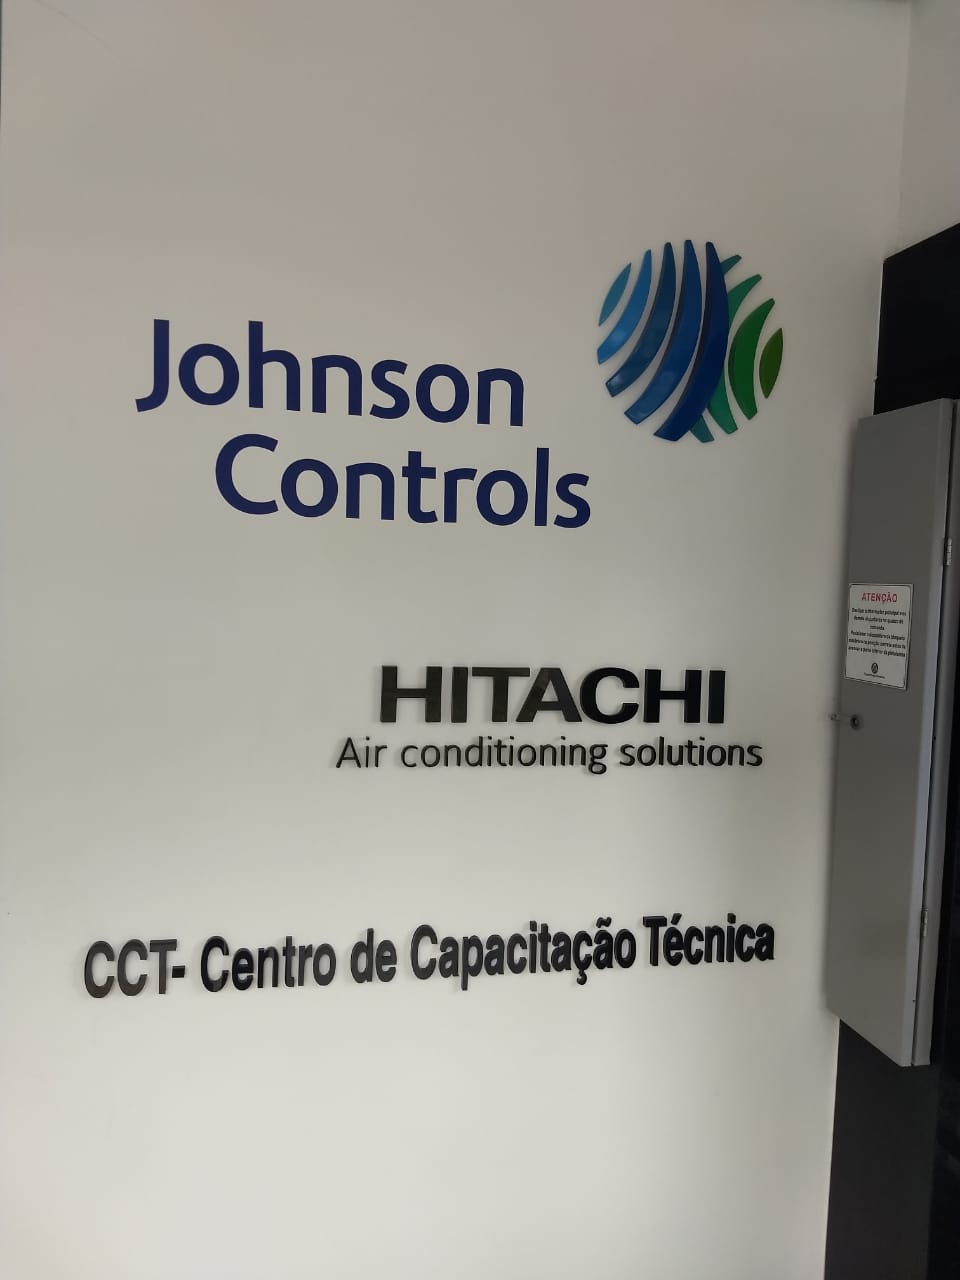 Johnson Controls-Hitachi divulga agenda de treinamentos para o mês de maio